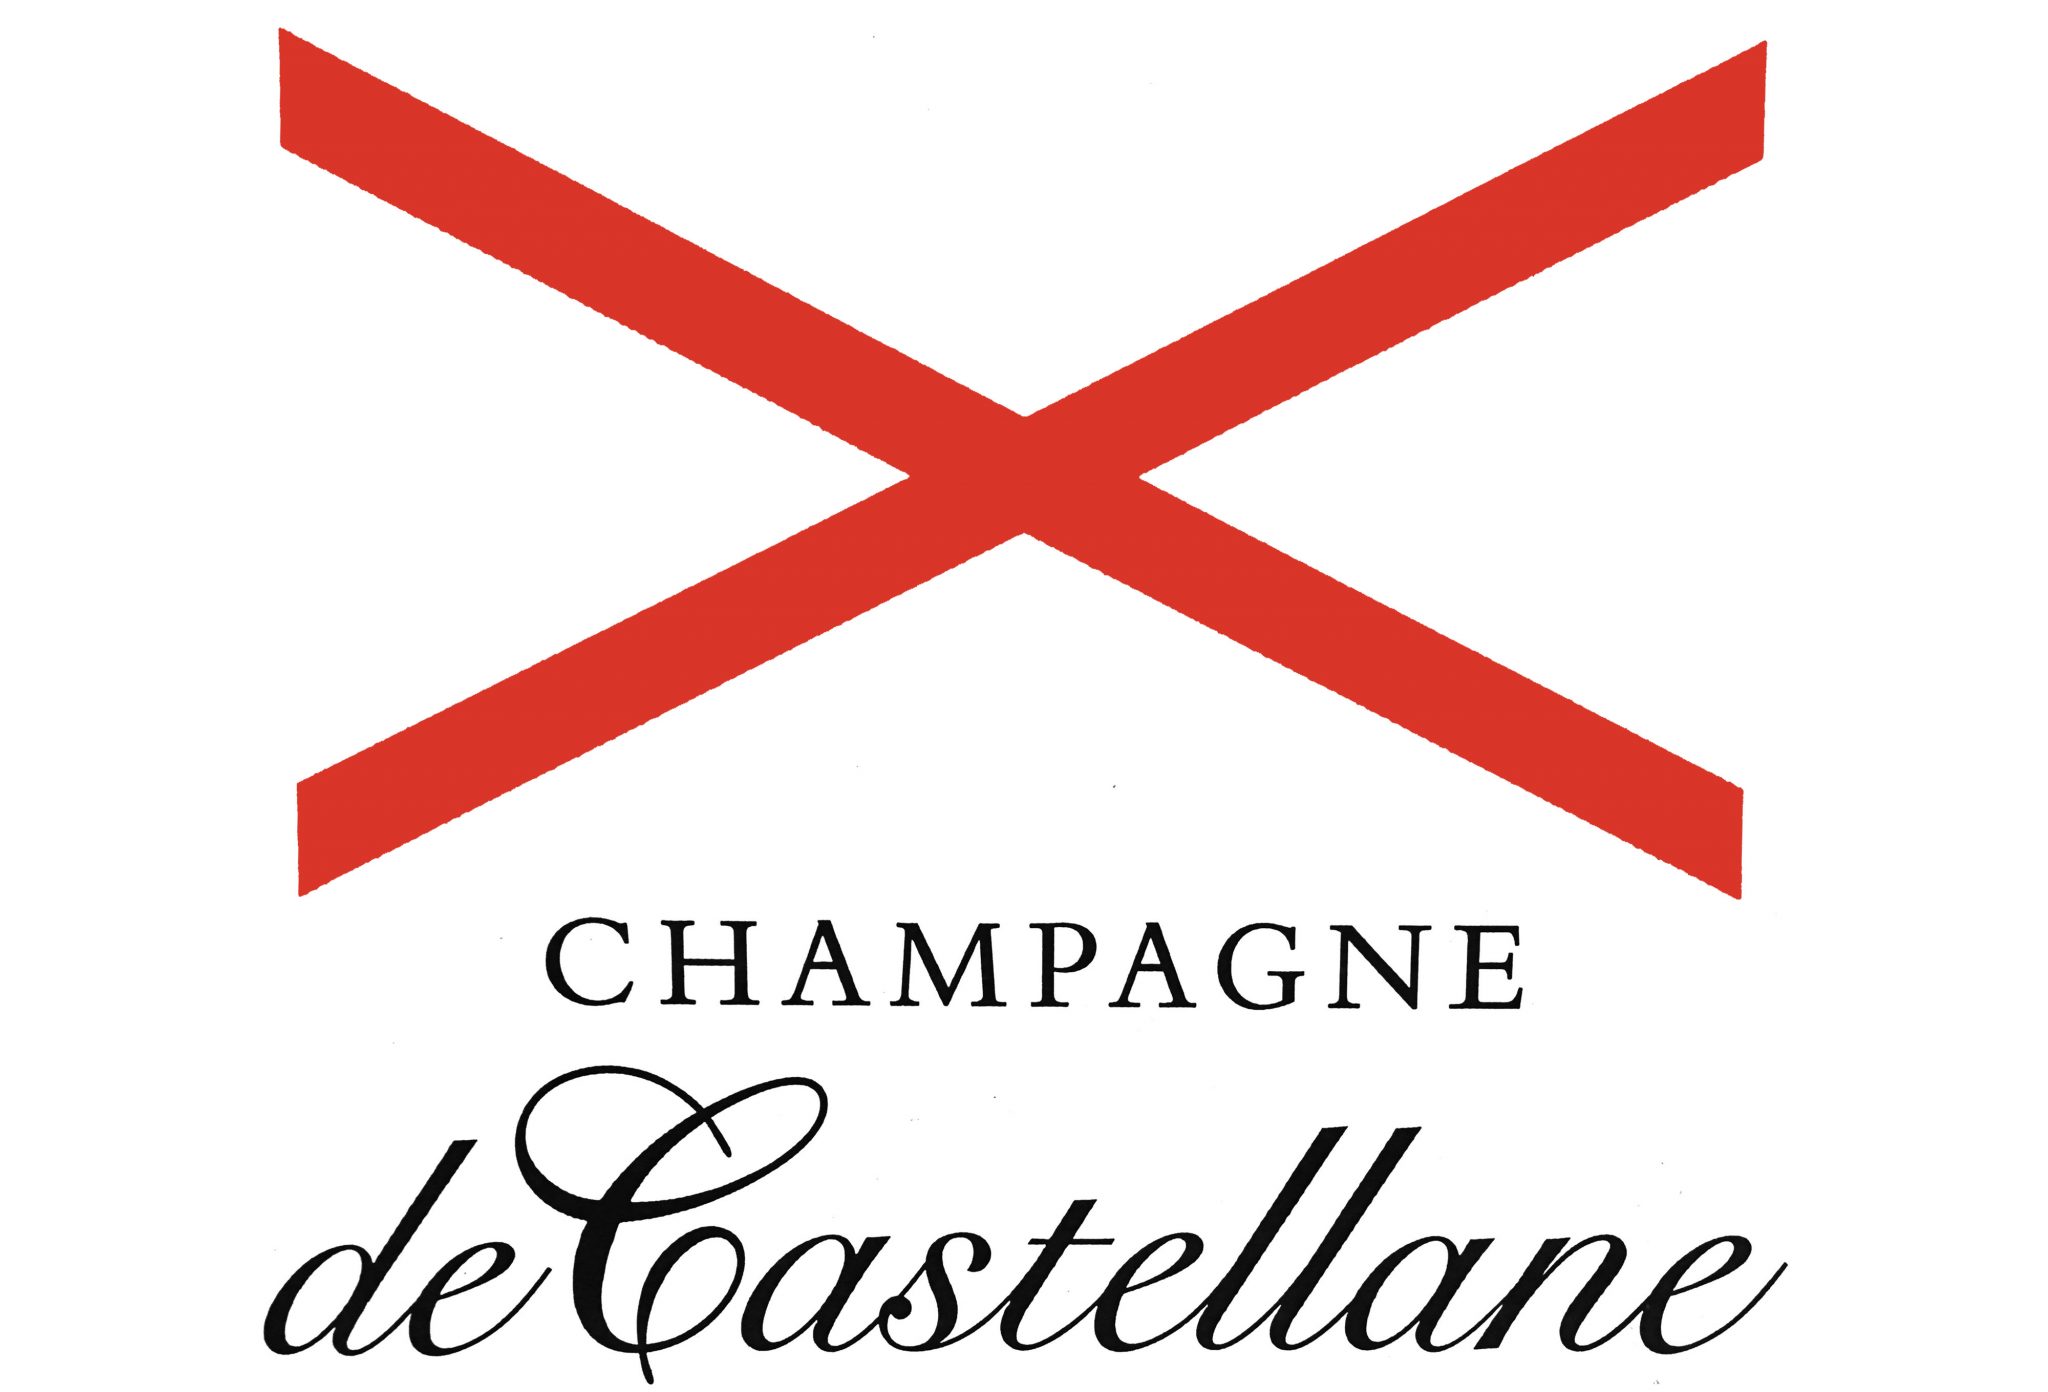 Champagne De Castellane